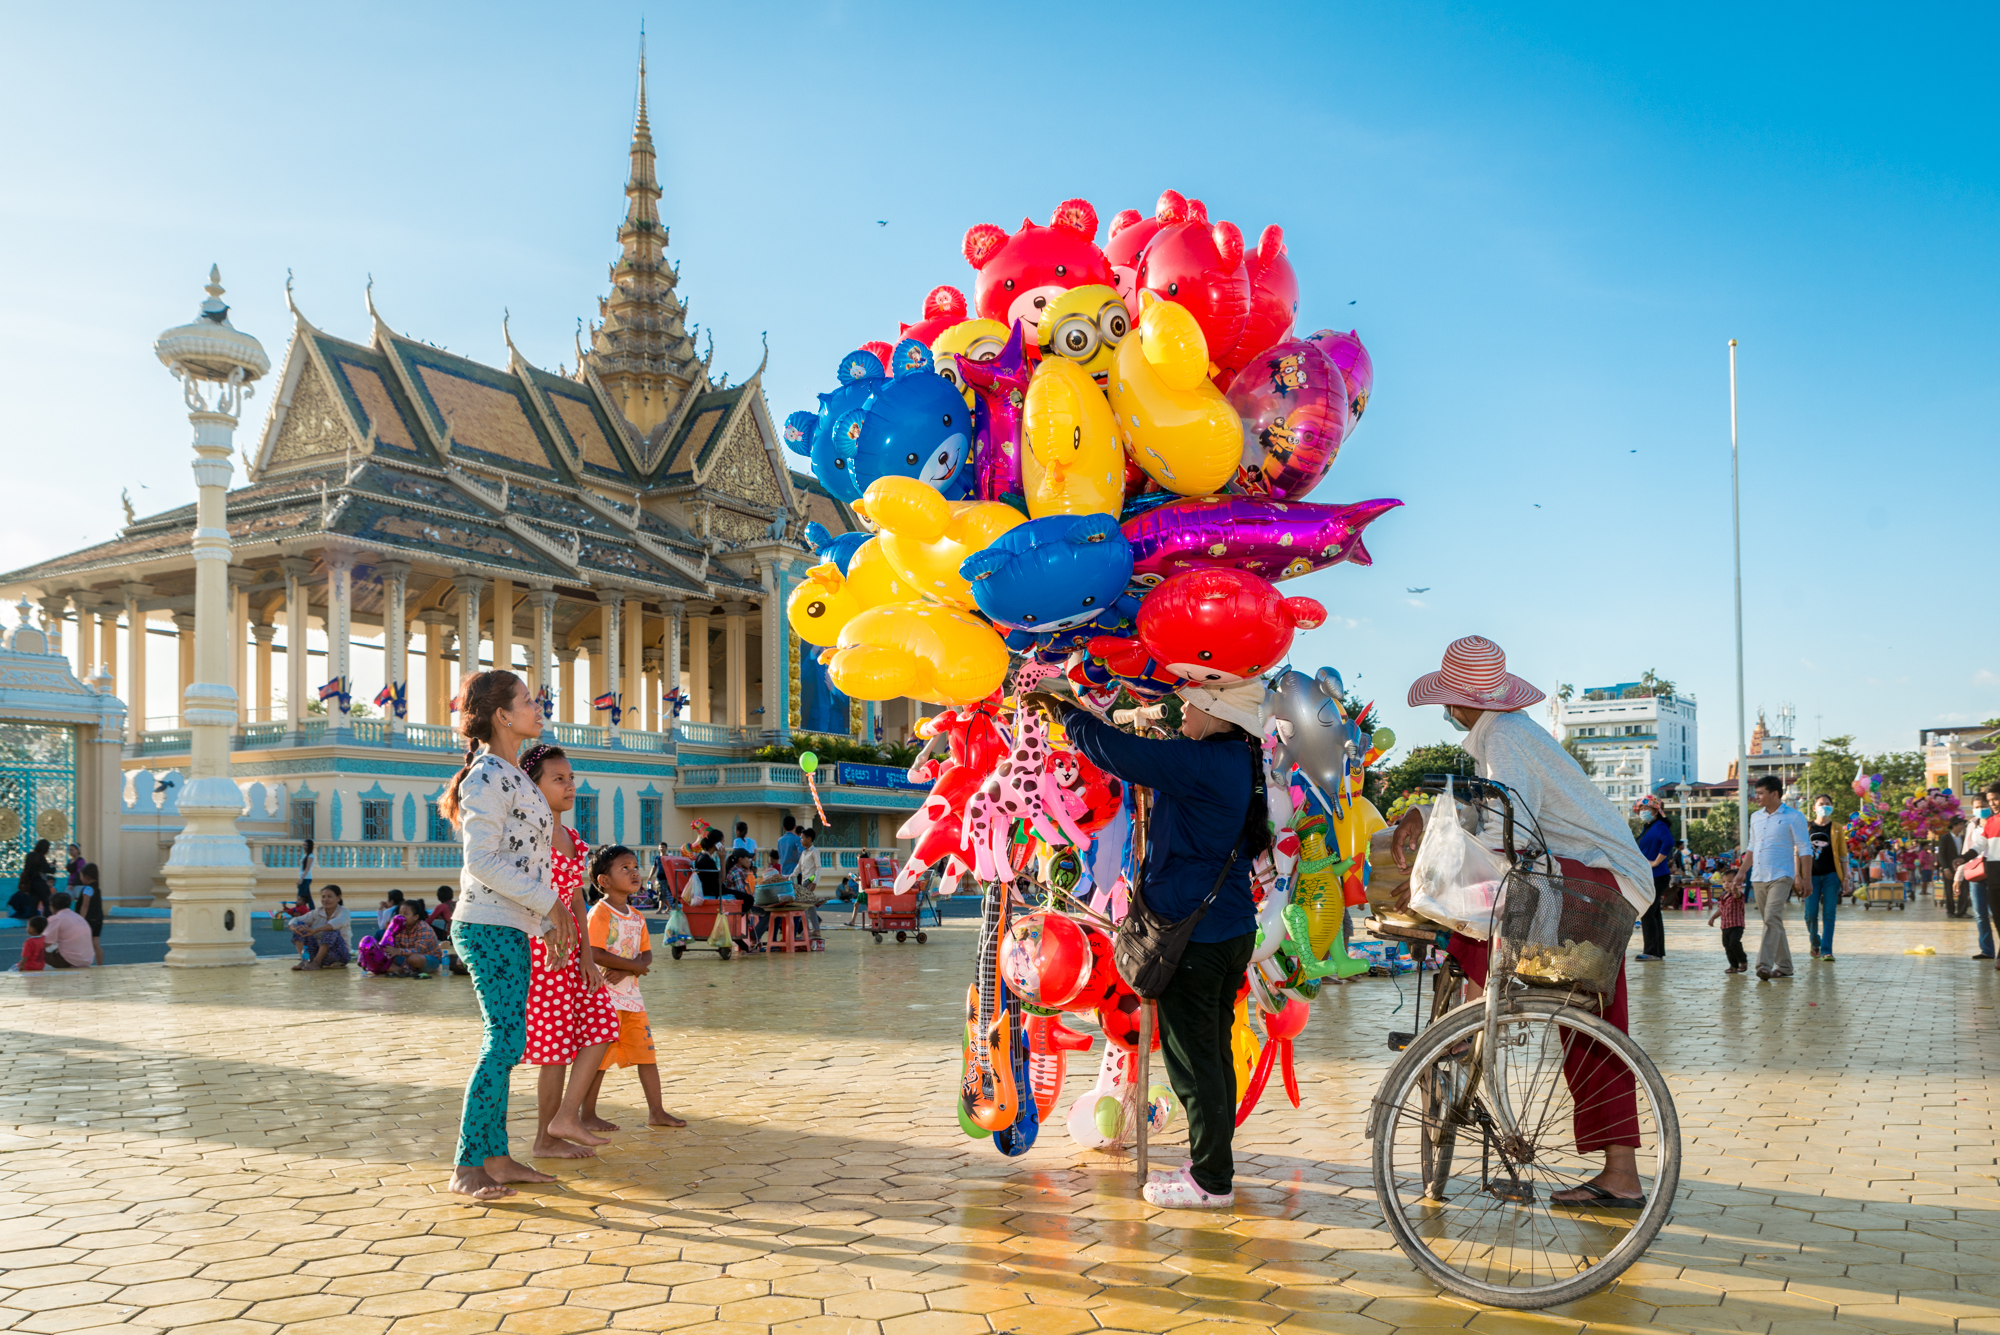 Ballon Vendor, Phnom Penh, Cambodia.